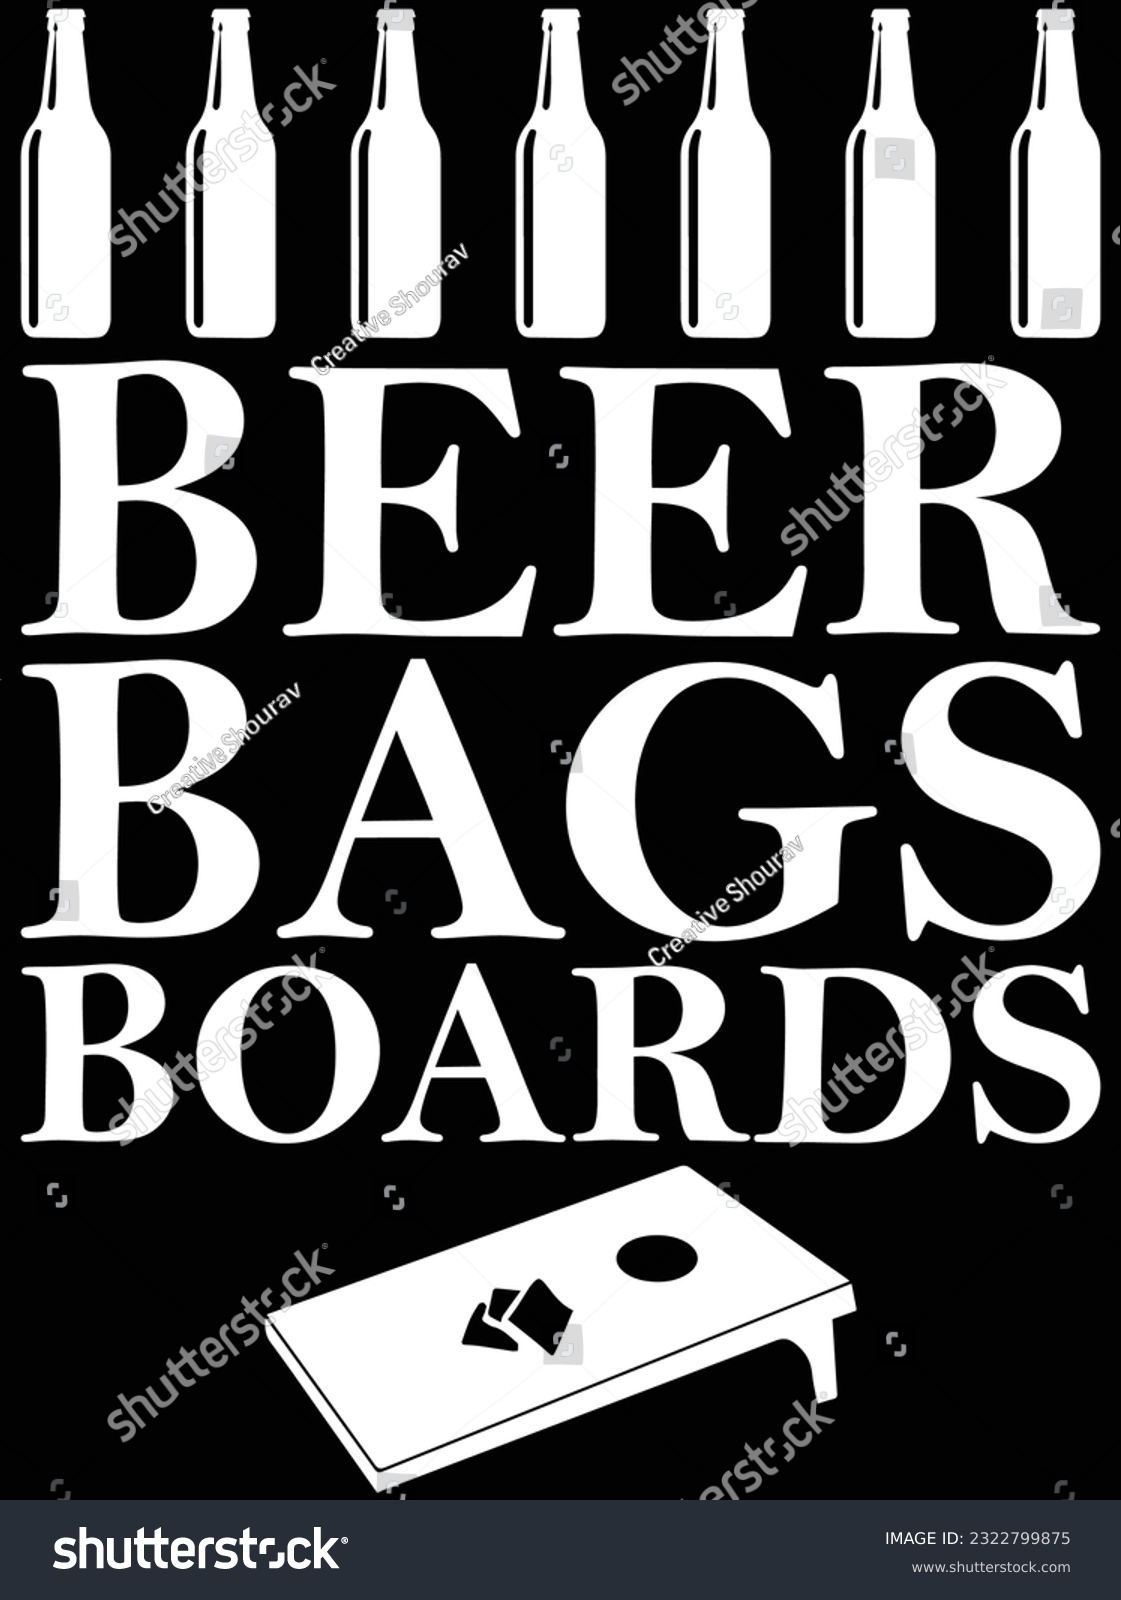 SVG of Beer Bags boards vector art design, eps file. design file for t-shirt. SVG, EPS cuttable design file svg